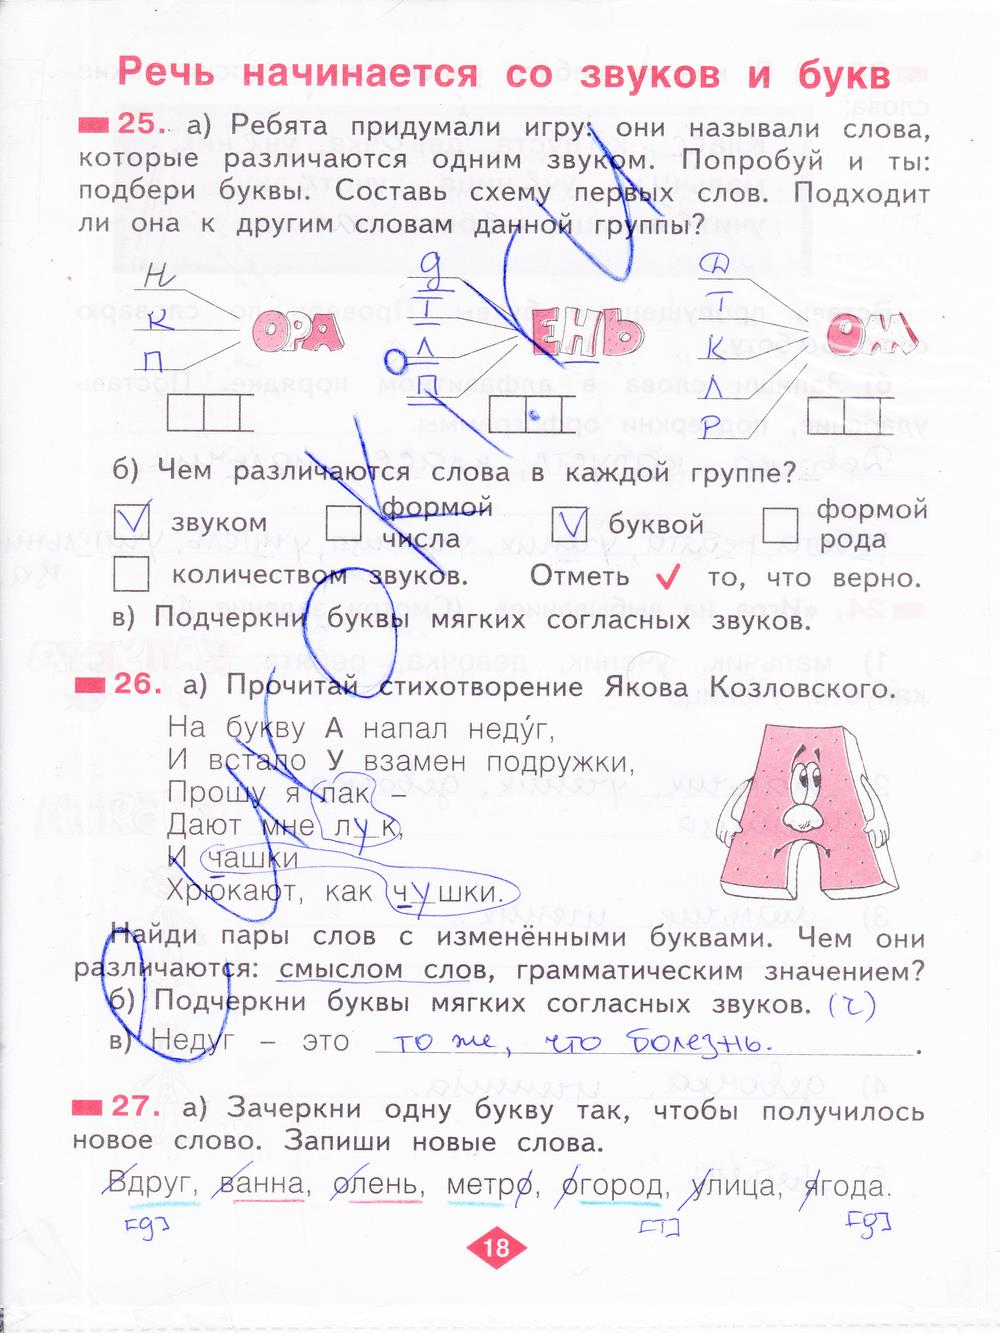 гдз 2 класс рабочая тетрадь часть 1 страница 18 русский язык Яковлева